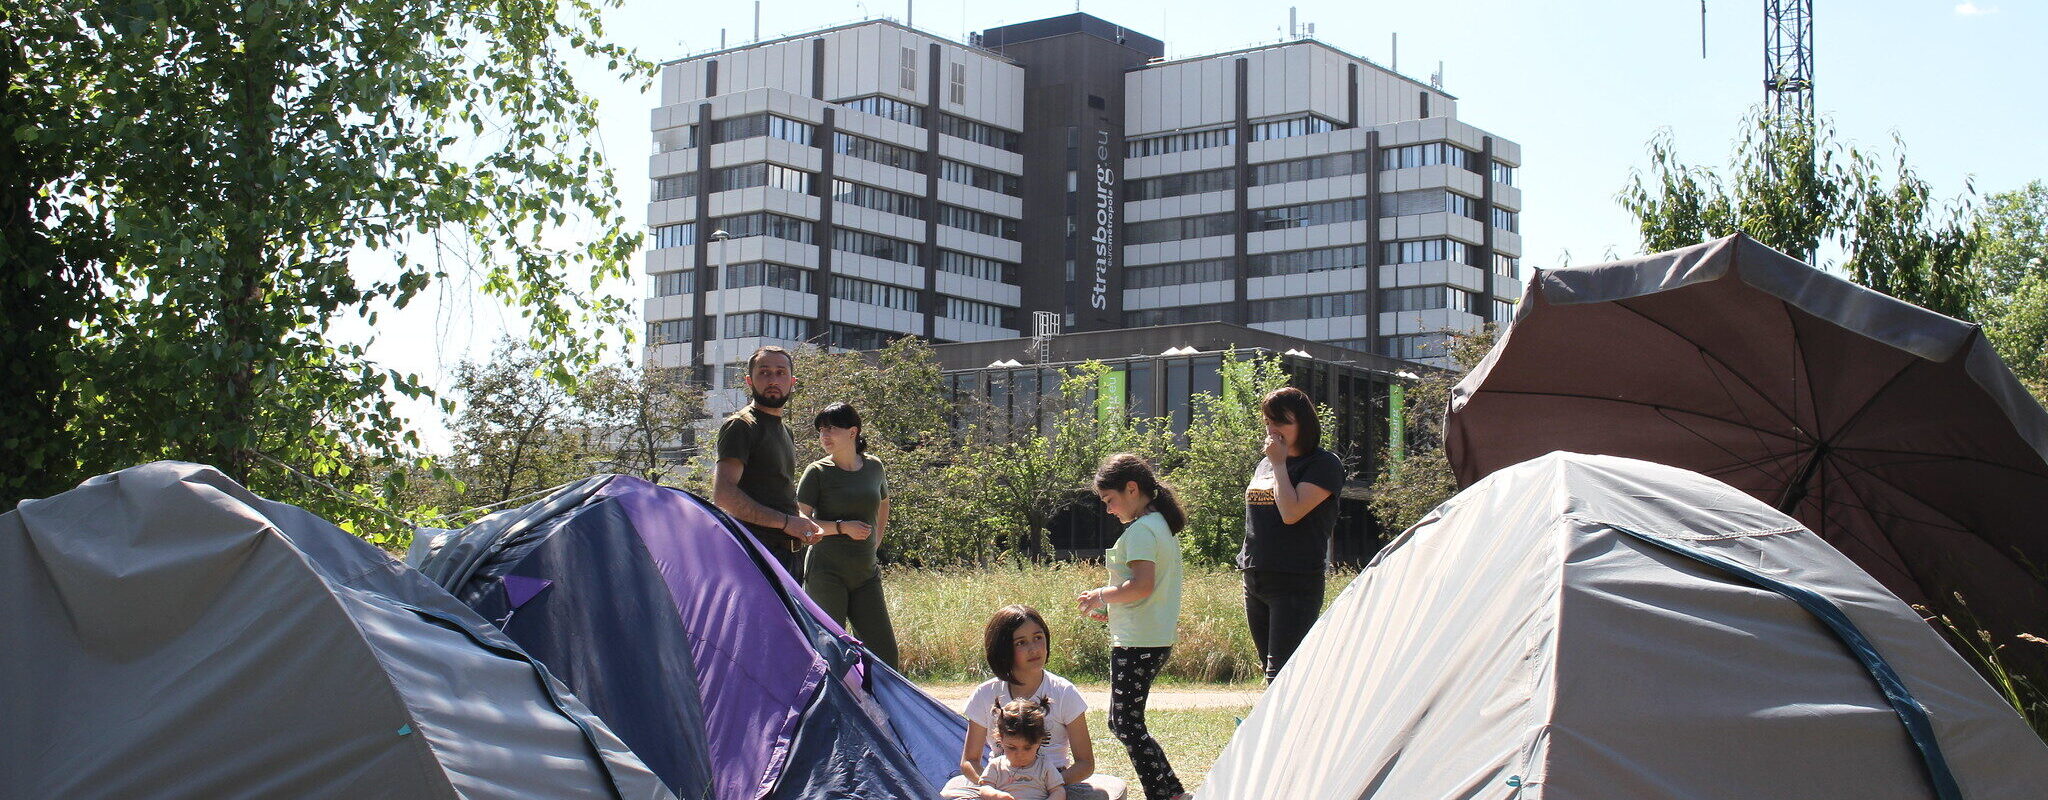 Un camp d’une quarantaine de demandeurs d’asile devant la mairie de Strasbourg